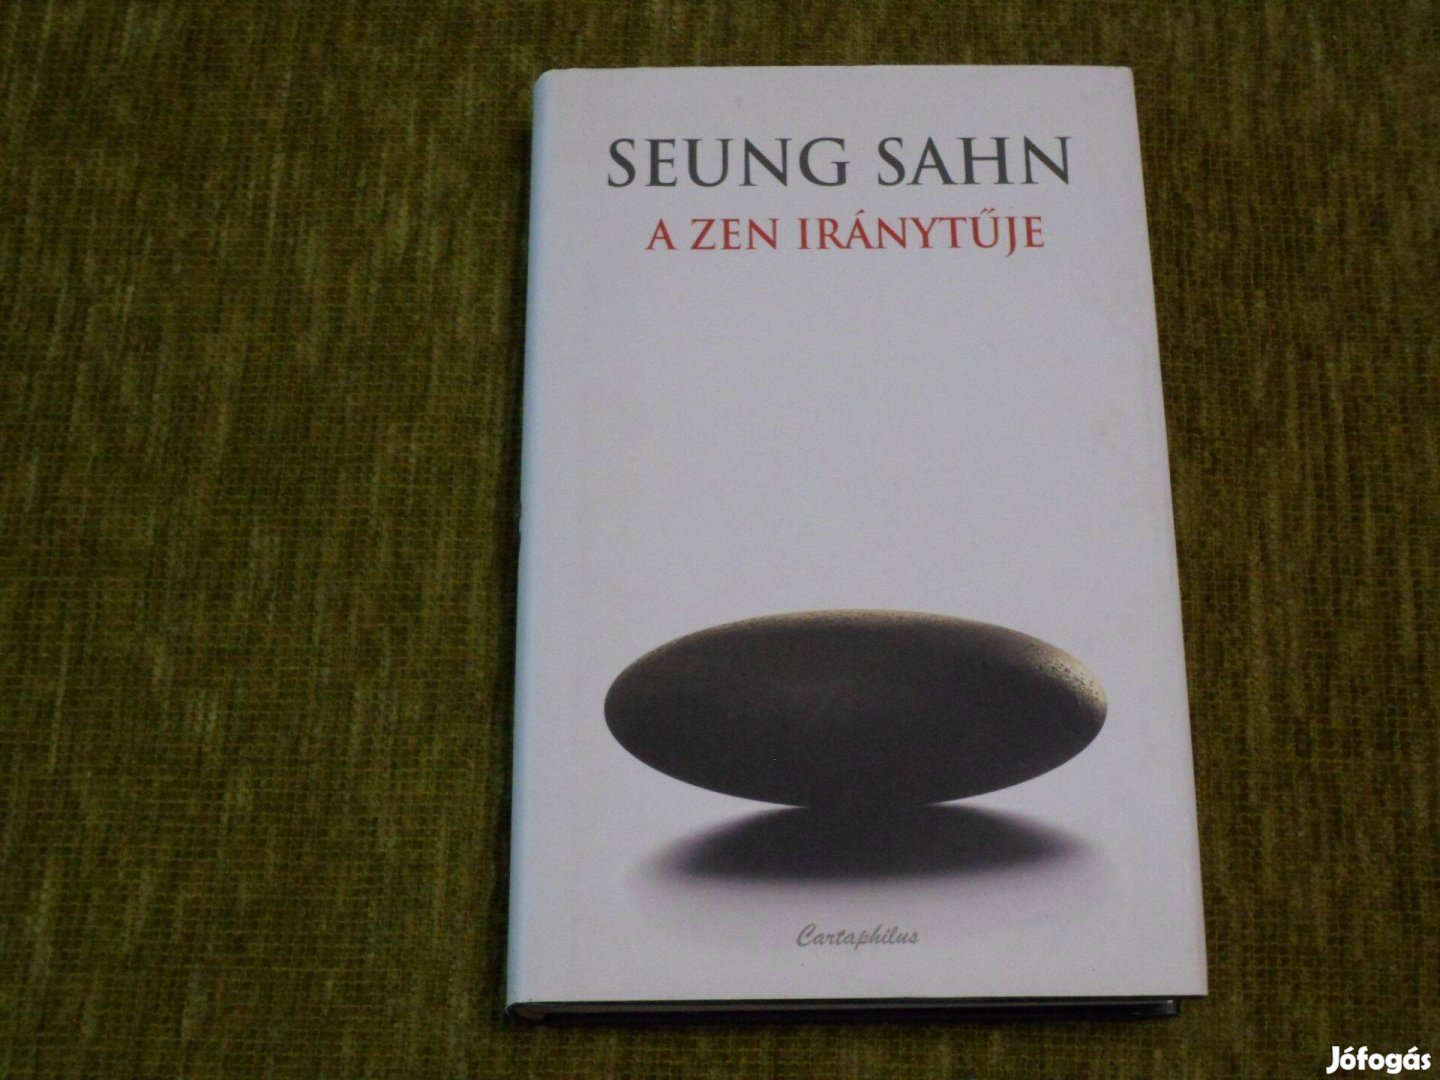 Seung Sahn: A zen iránytűje